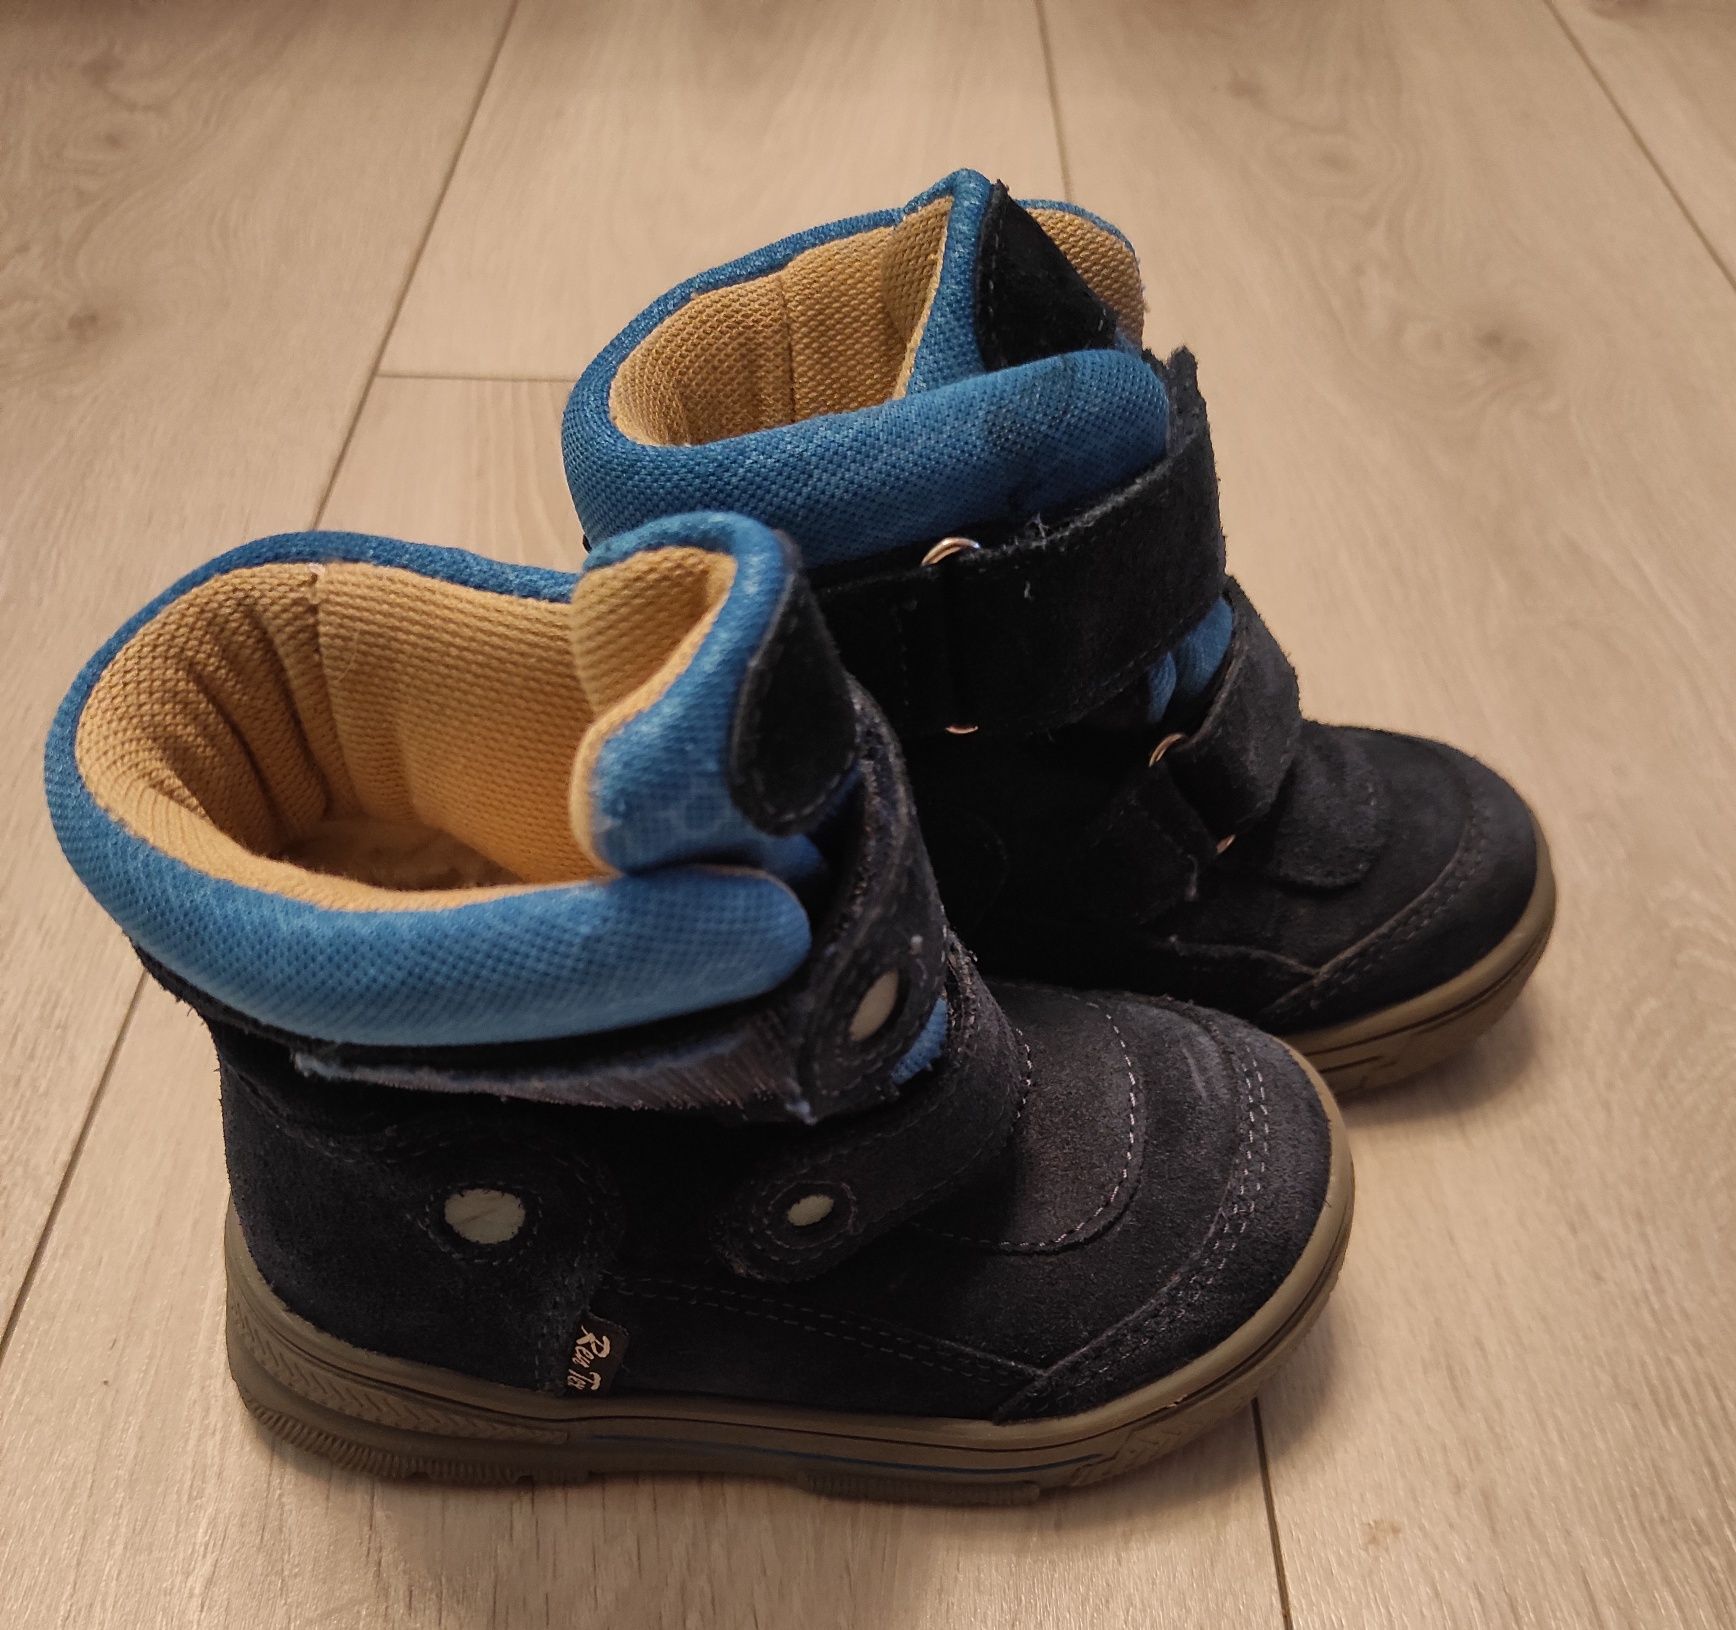 Chłopięce buty zimowe/śniegowce firmy Ren But rozmiar 23